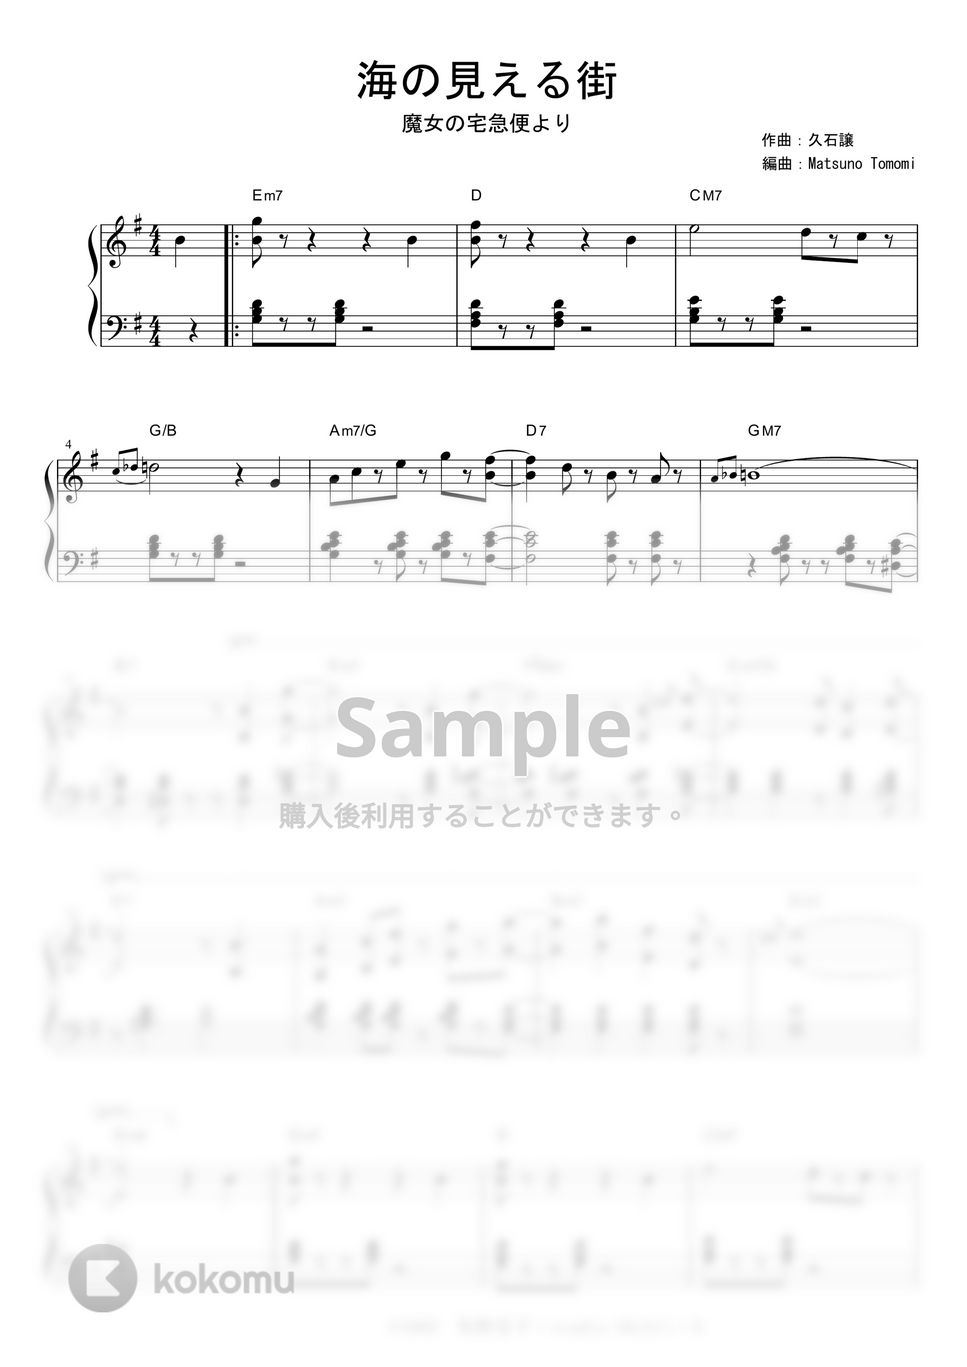 久石譲 - 海の見える街 (Jazz ver.) by piano*score